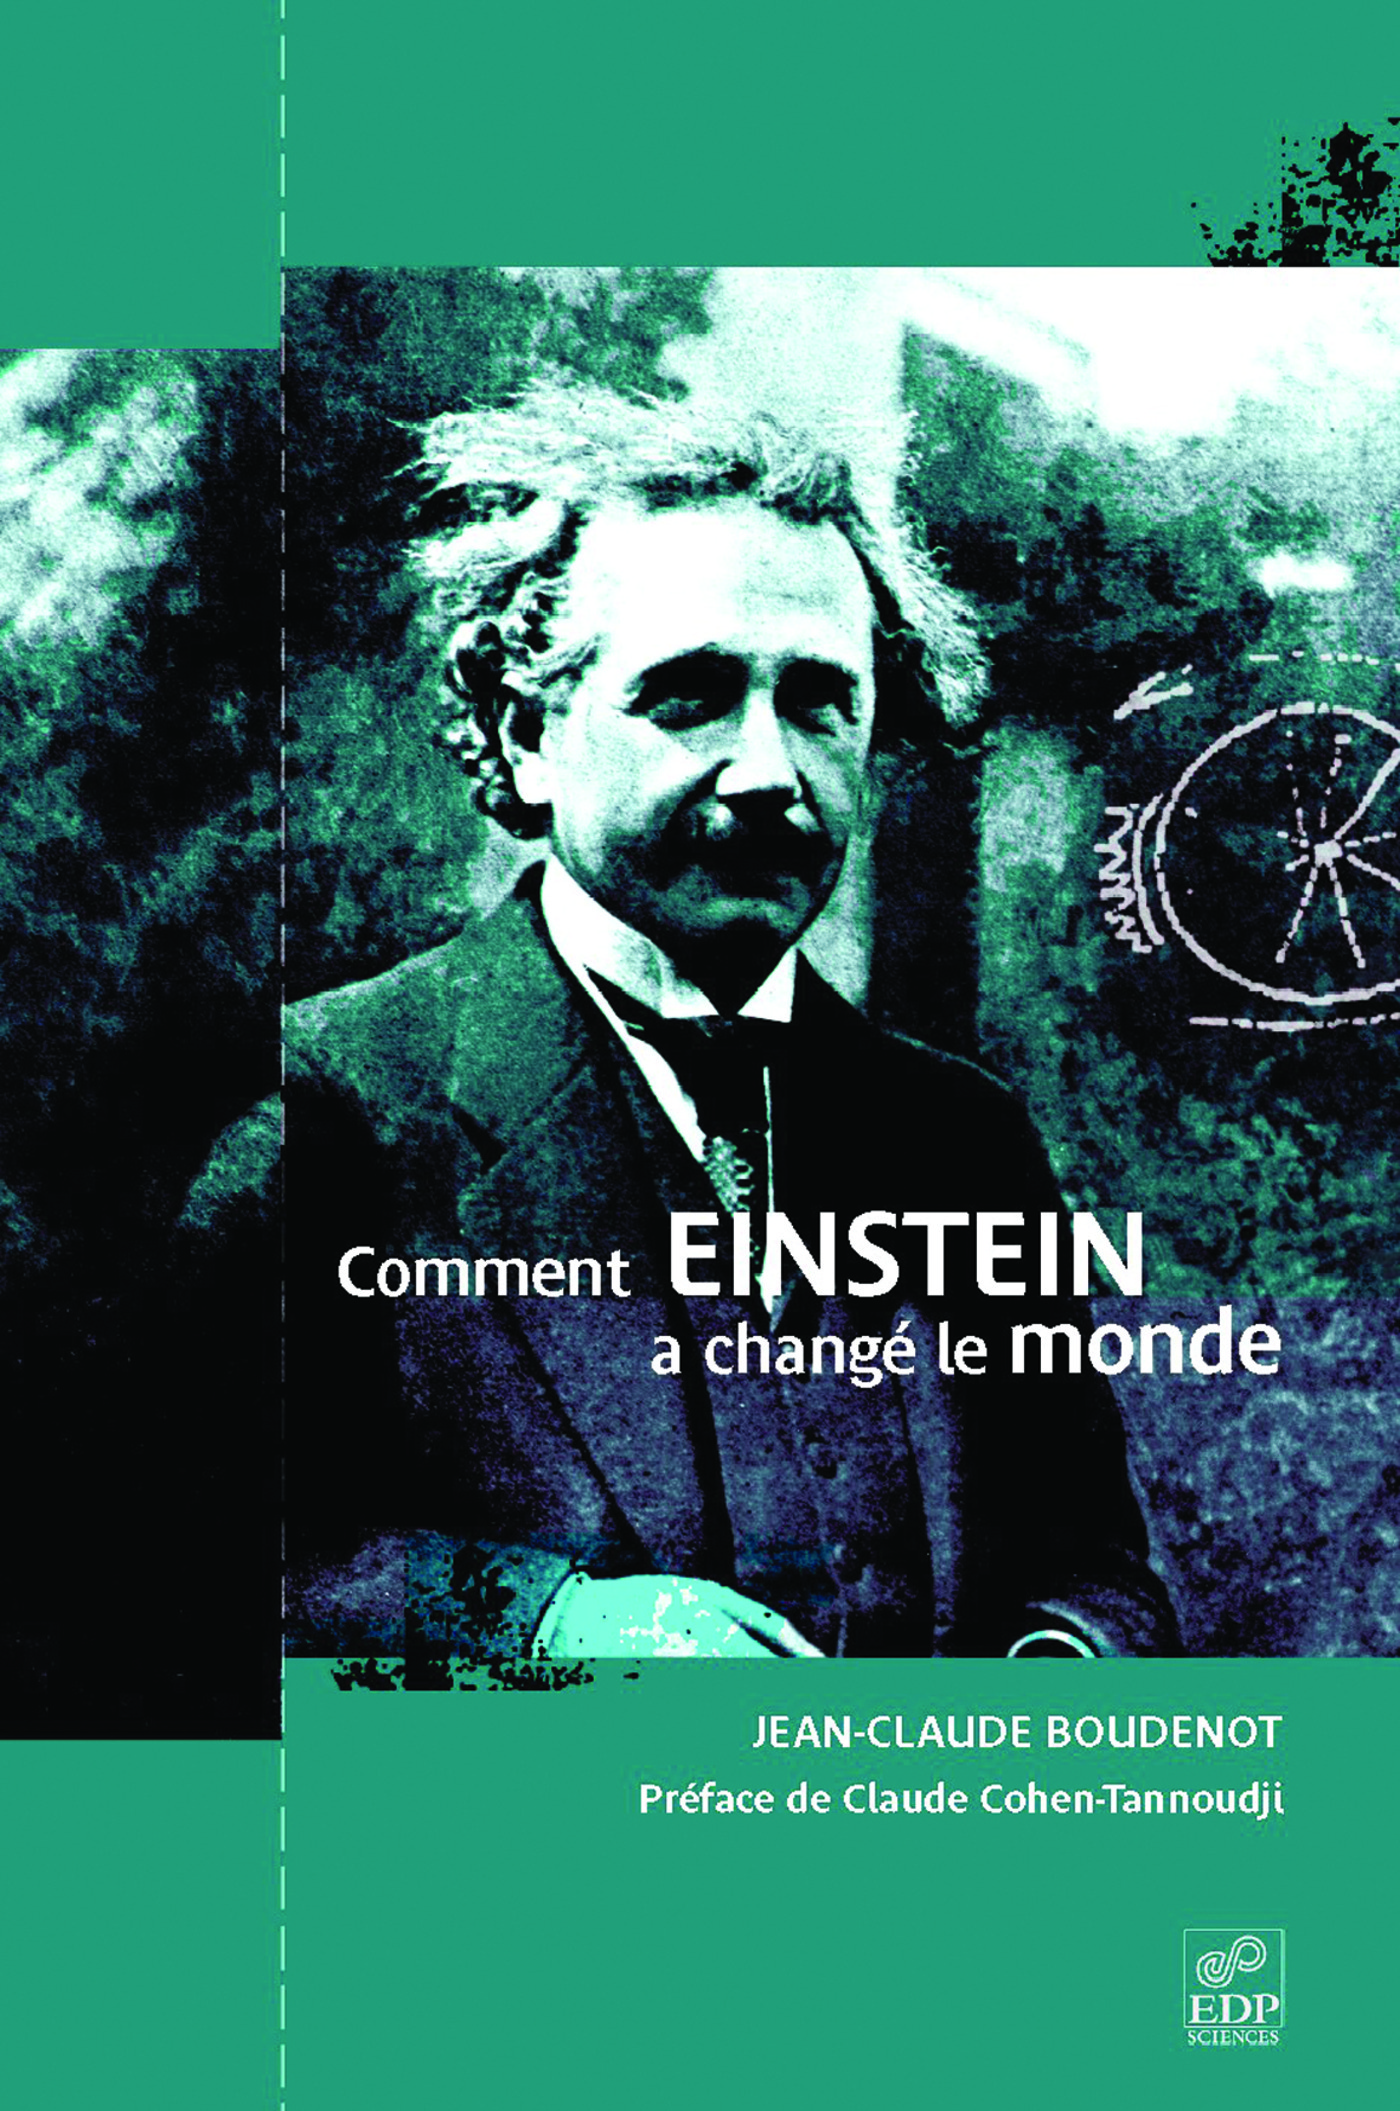 livre de poche: Albert Einstein Comment je vois le monde - Vinted